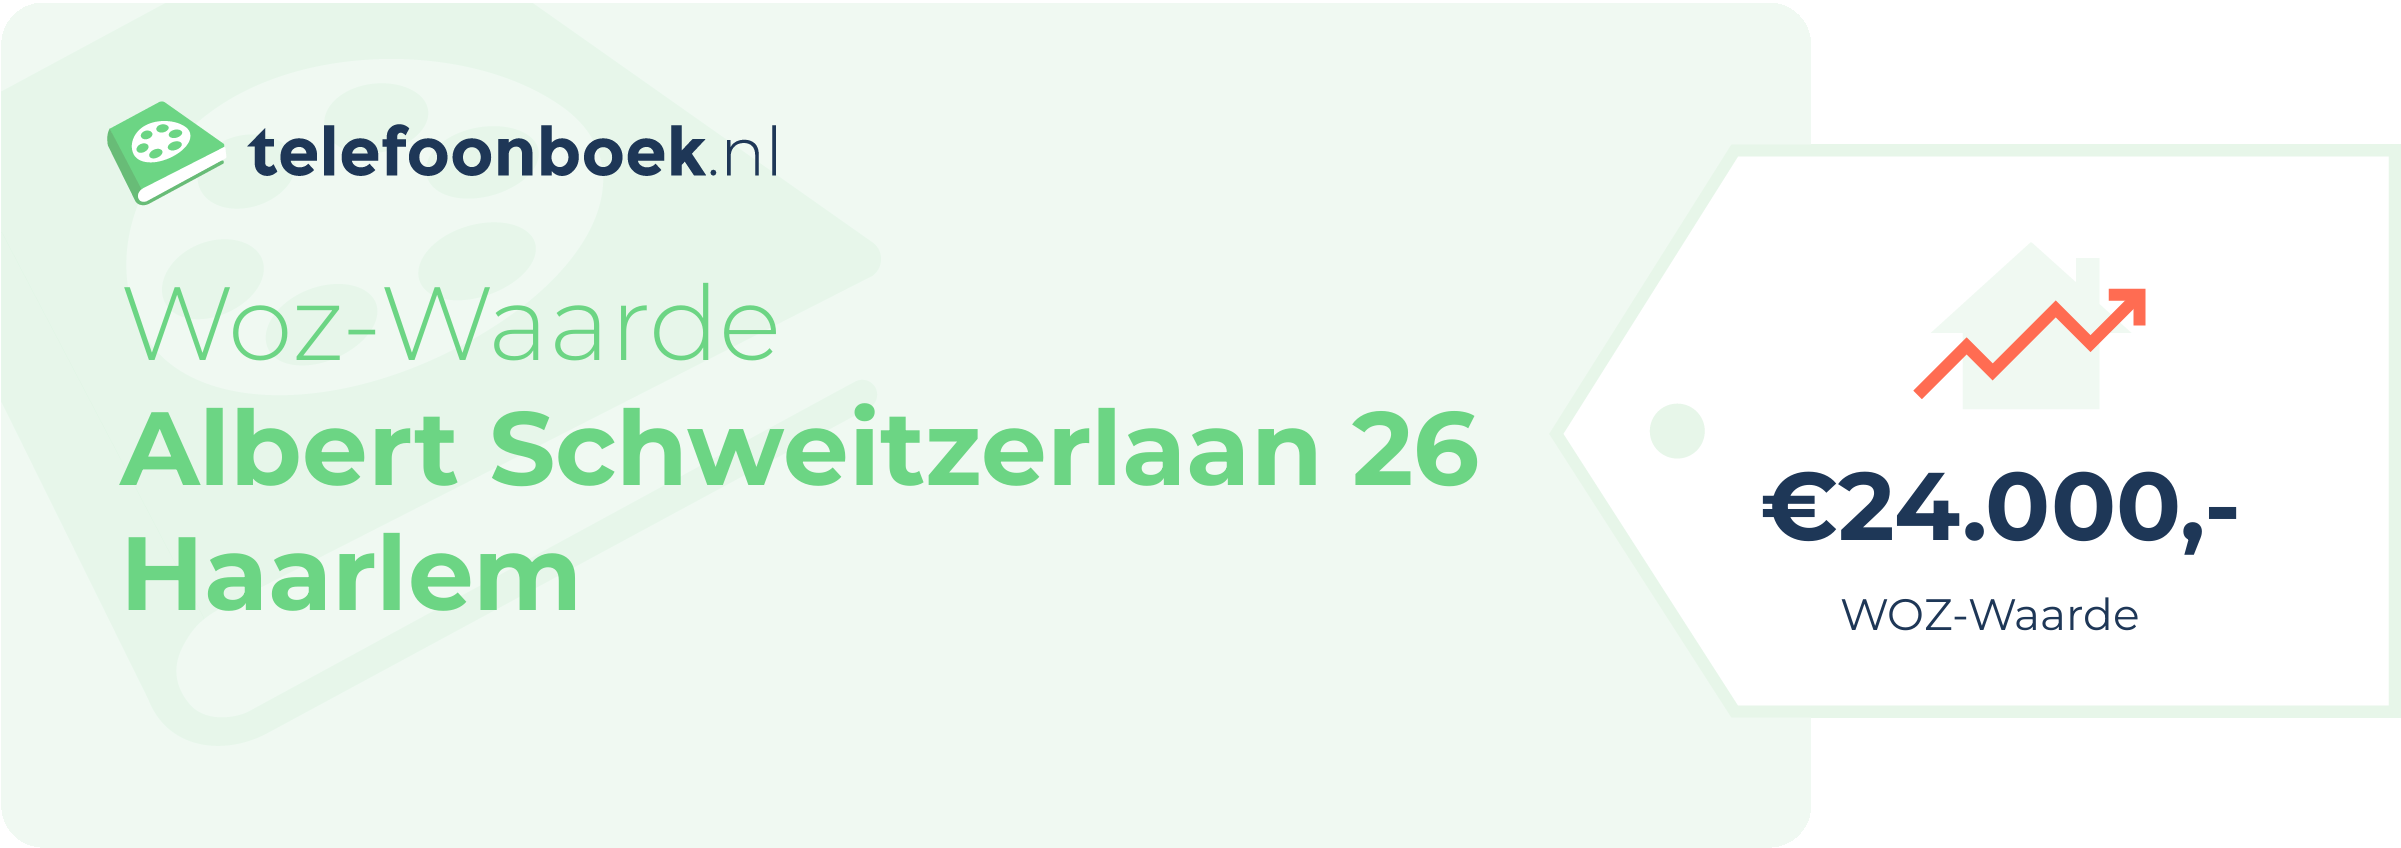 WOZ-waarde Albert Schweitzerlaan 26 Haarlem